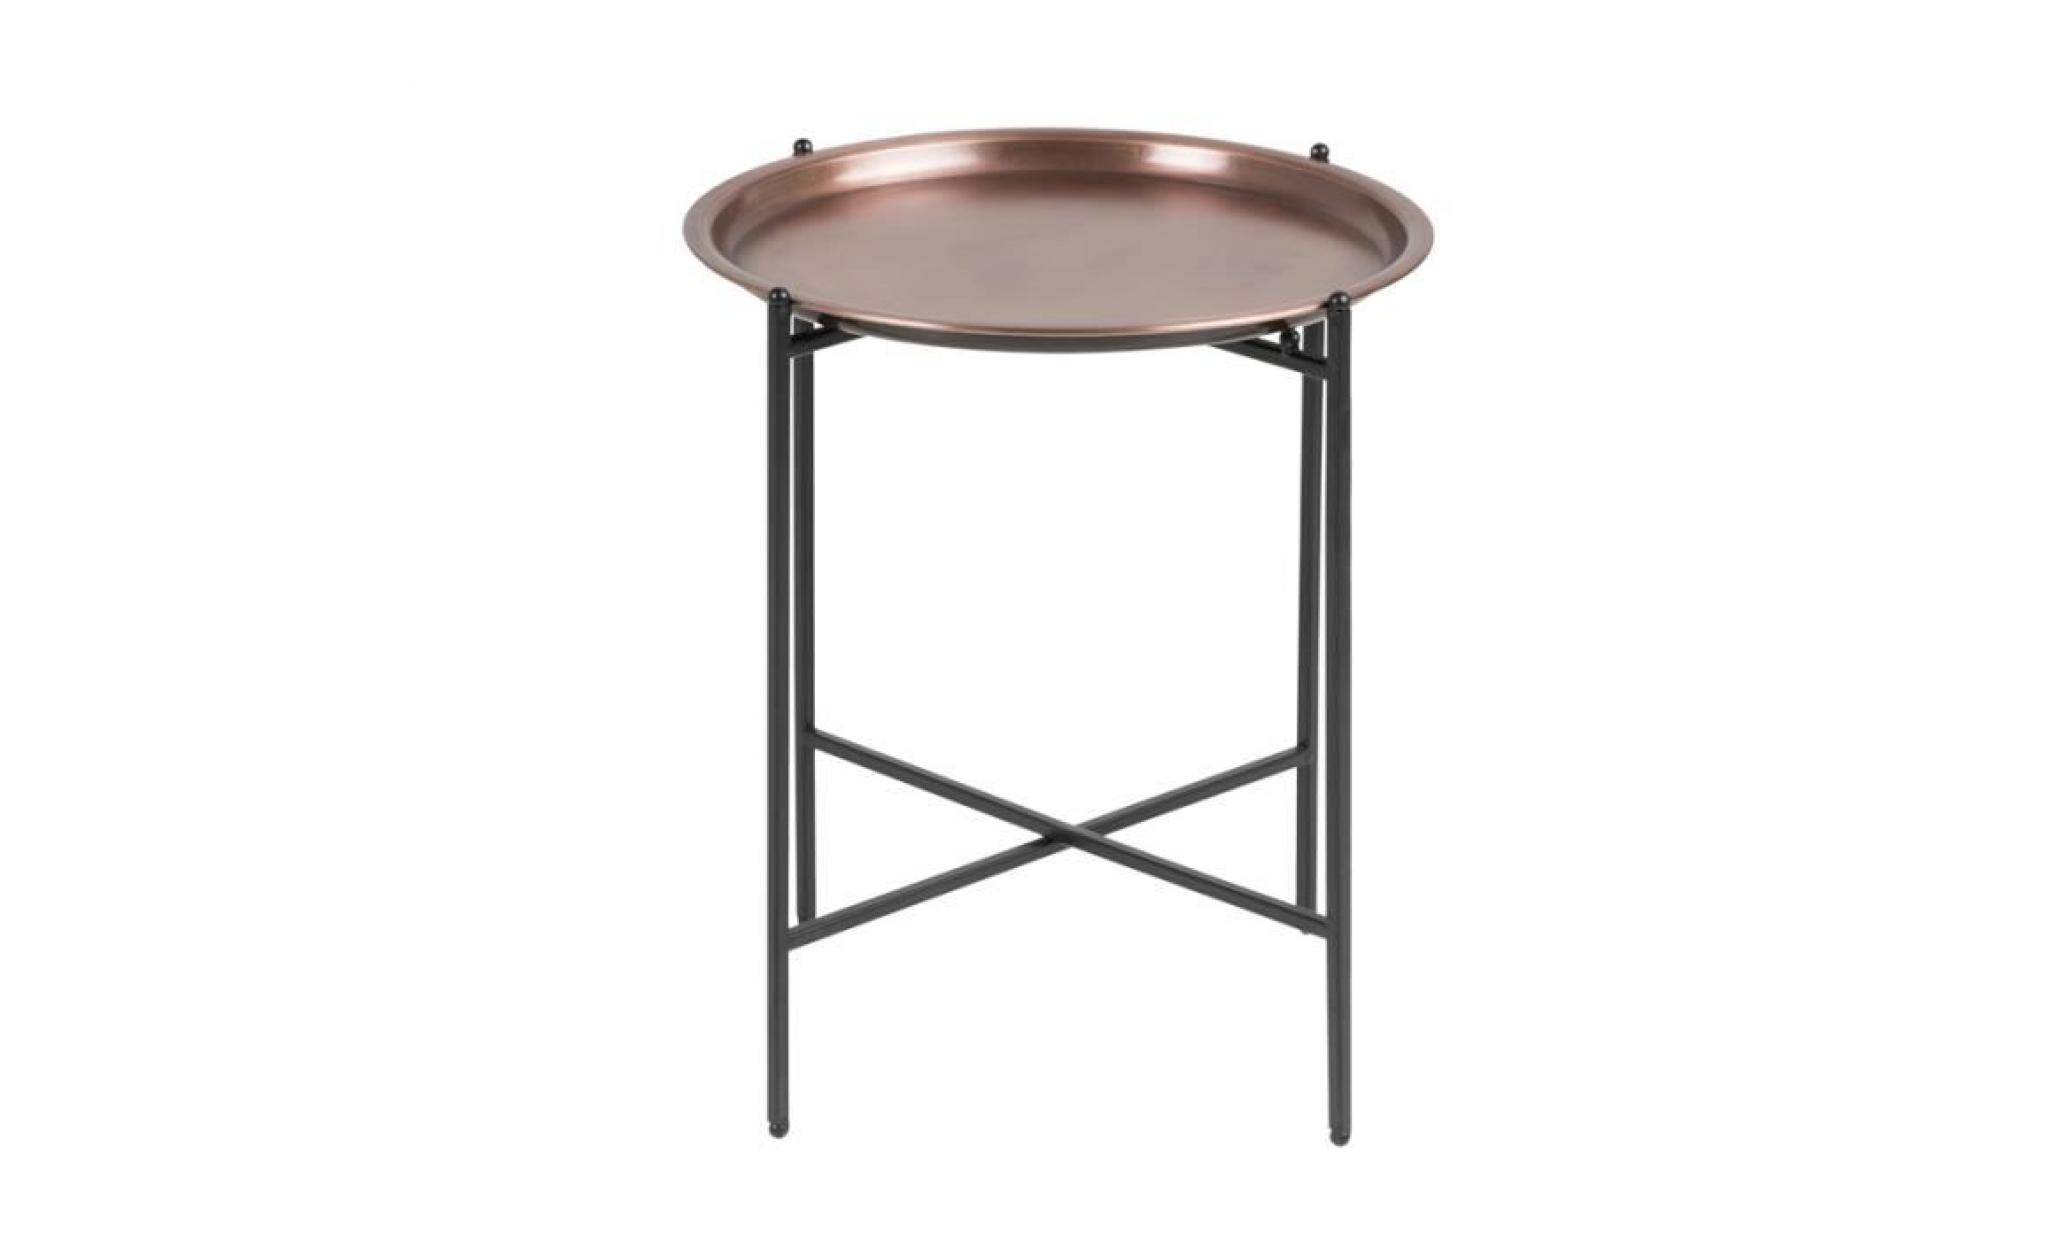 table de chevet glamour / table basse   millie   ⌀ 39,5 cm   noir / cuivre   pieds en acier   style glamour   forme minimaliste pas cher